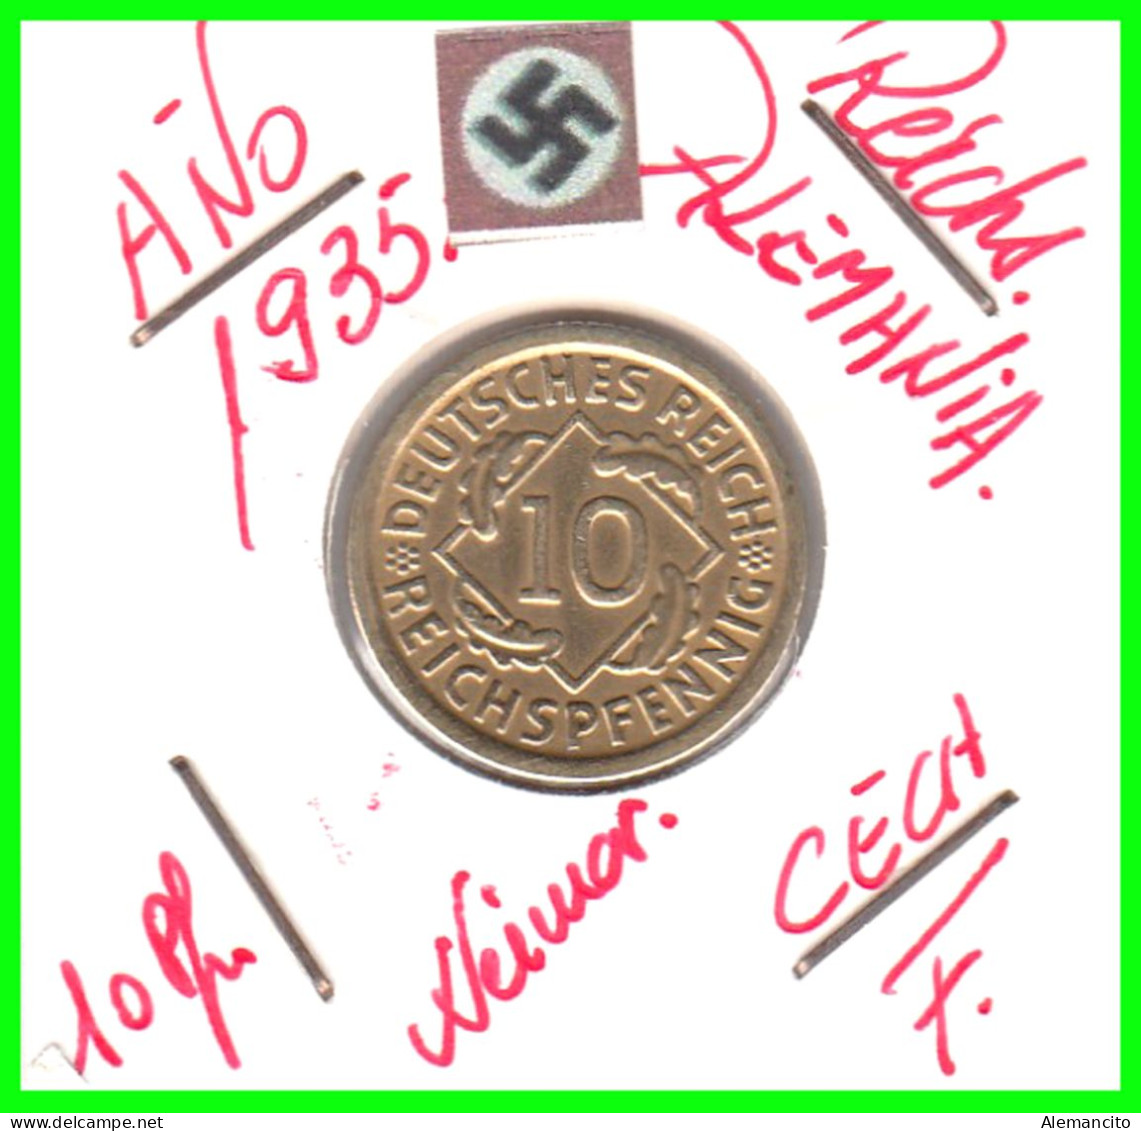 GERMANY REPÚBLICA DE WEIMAR 10 PFENNIG DE PENSIÓN ( 1935 CECA - F ) MONEDA DEL AÑO 1923-1936 (RENTENPFENNIG KM # 32 - 10 Rentenpfennig & 10 Reichspfennig